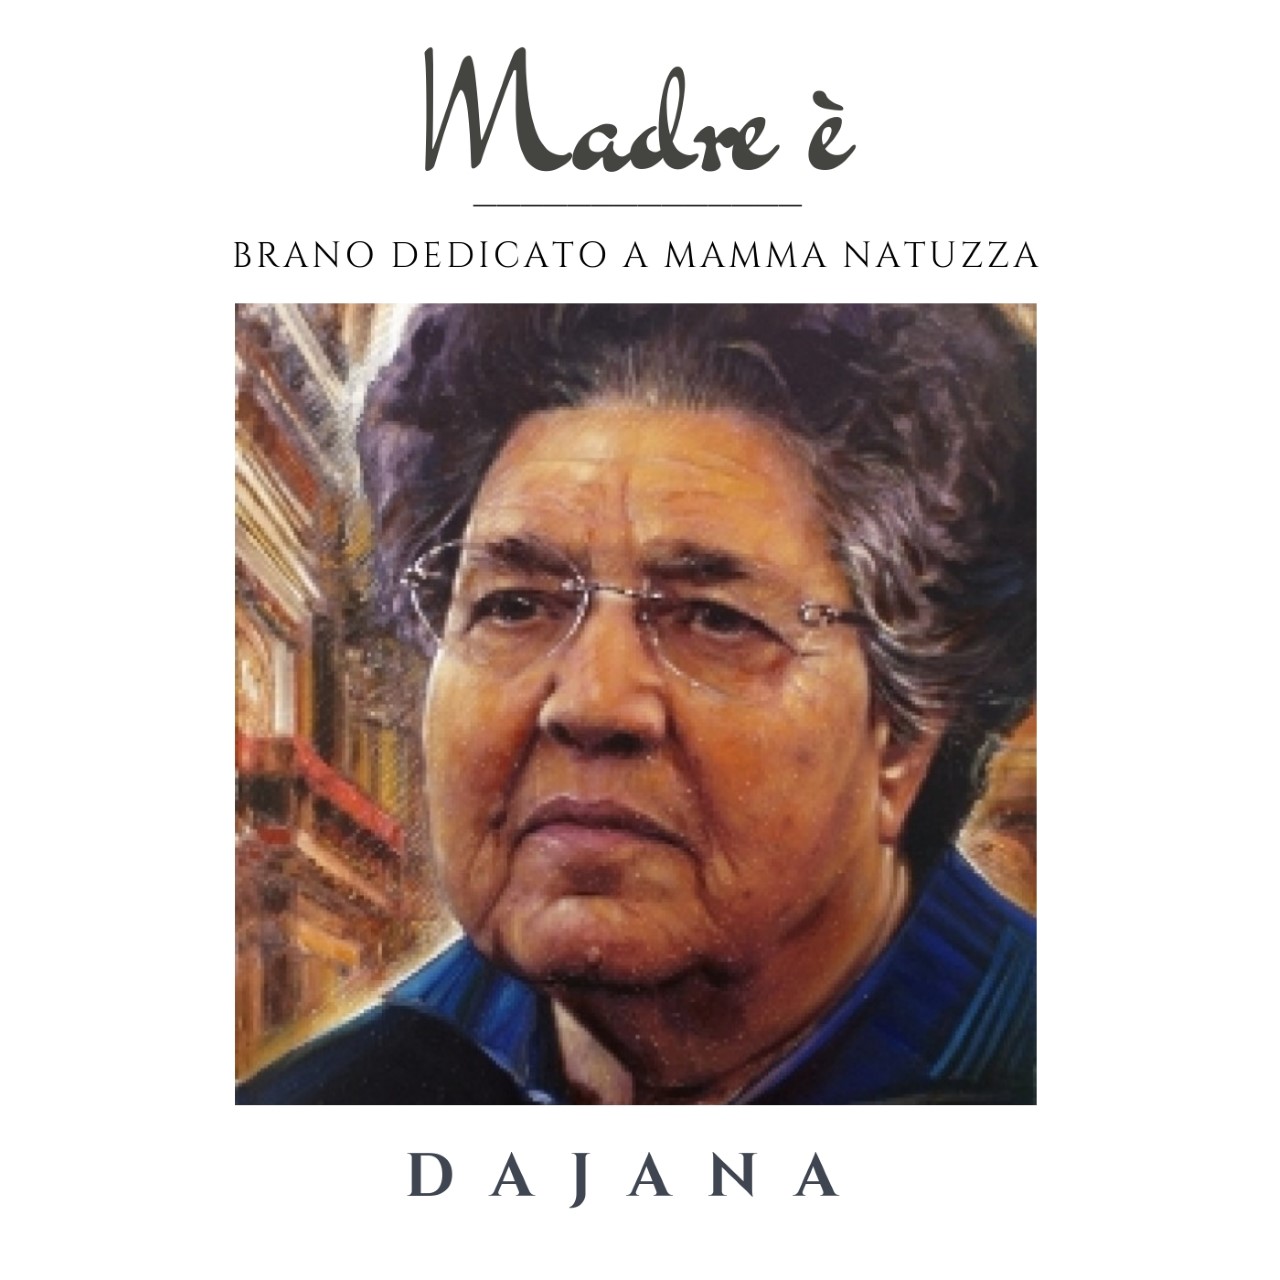 RECENSIONI. È online l’atteso video di “MADRE È” il brano di DAJANA dedicato a MAMMA NATUZZA